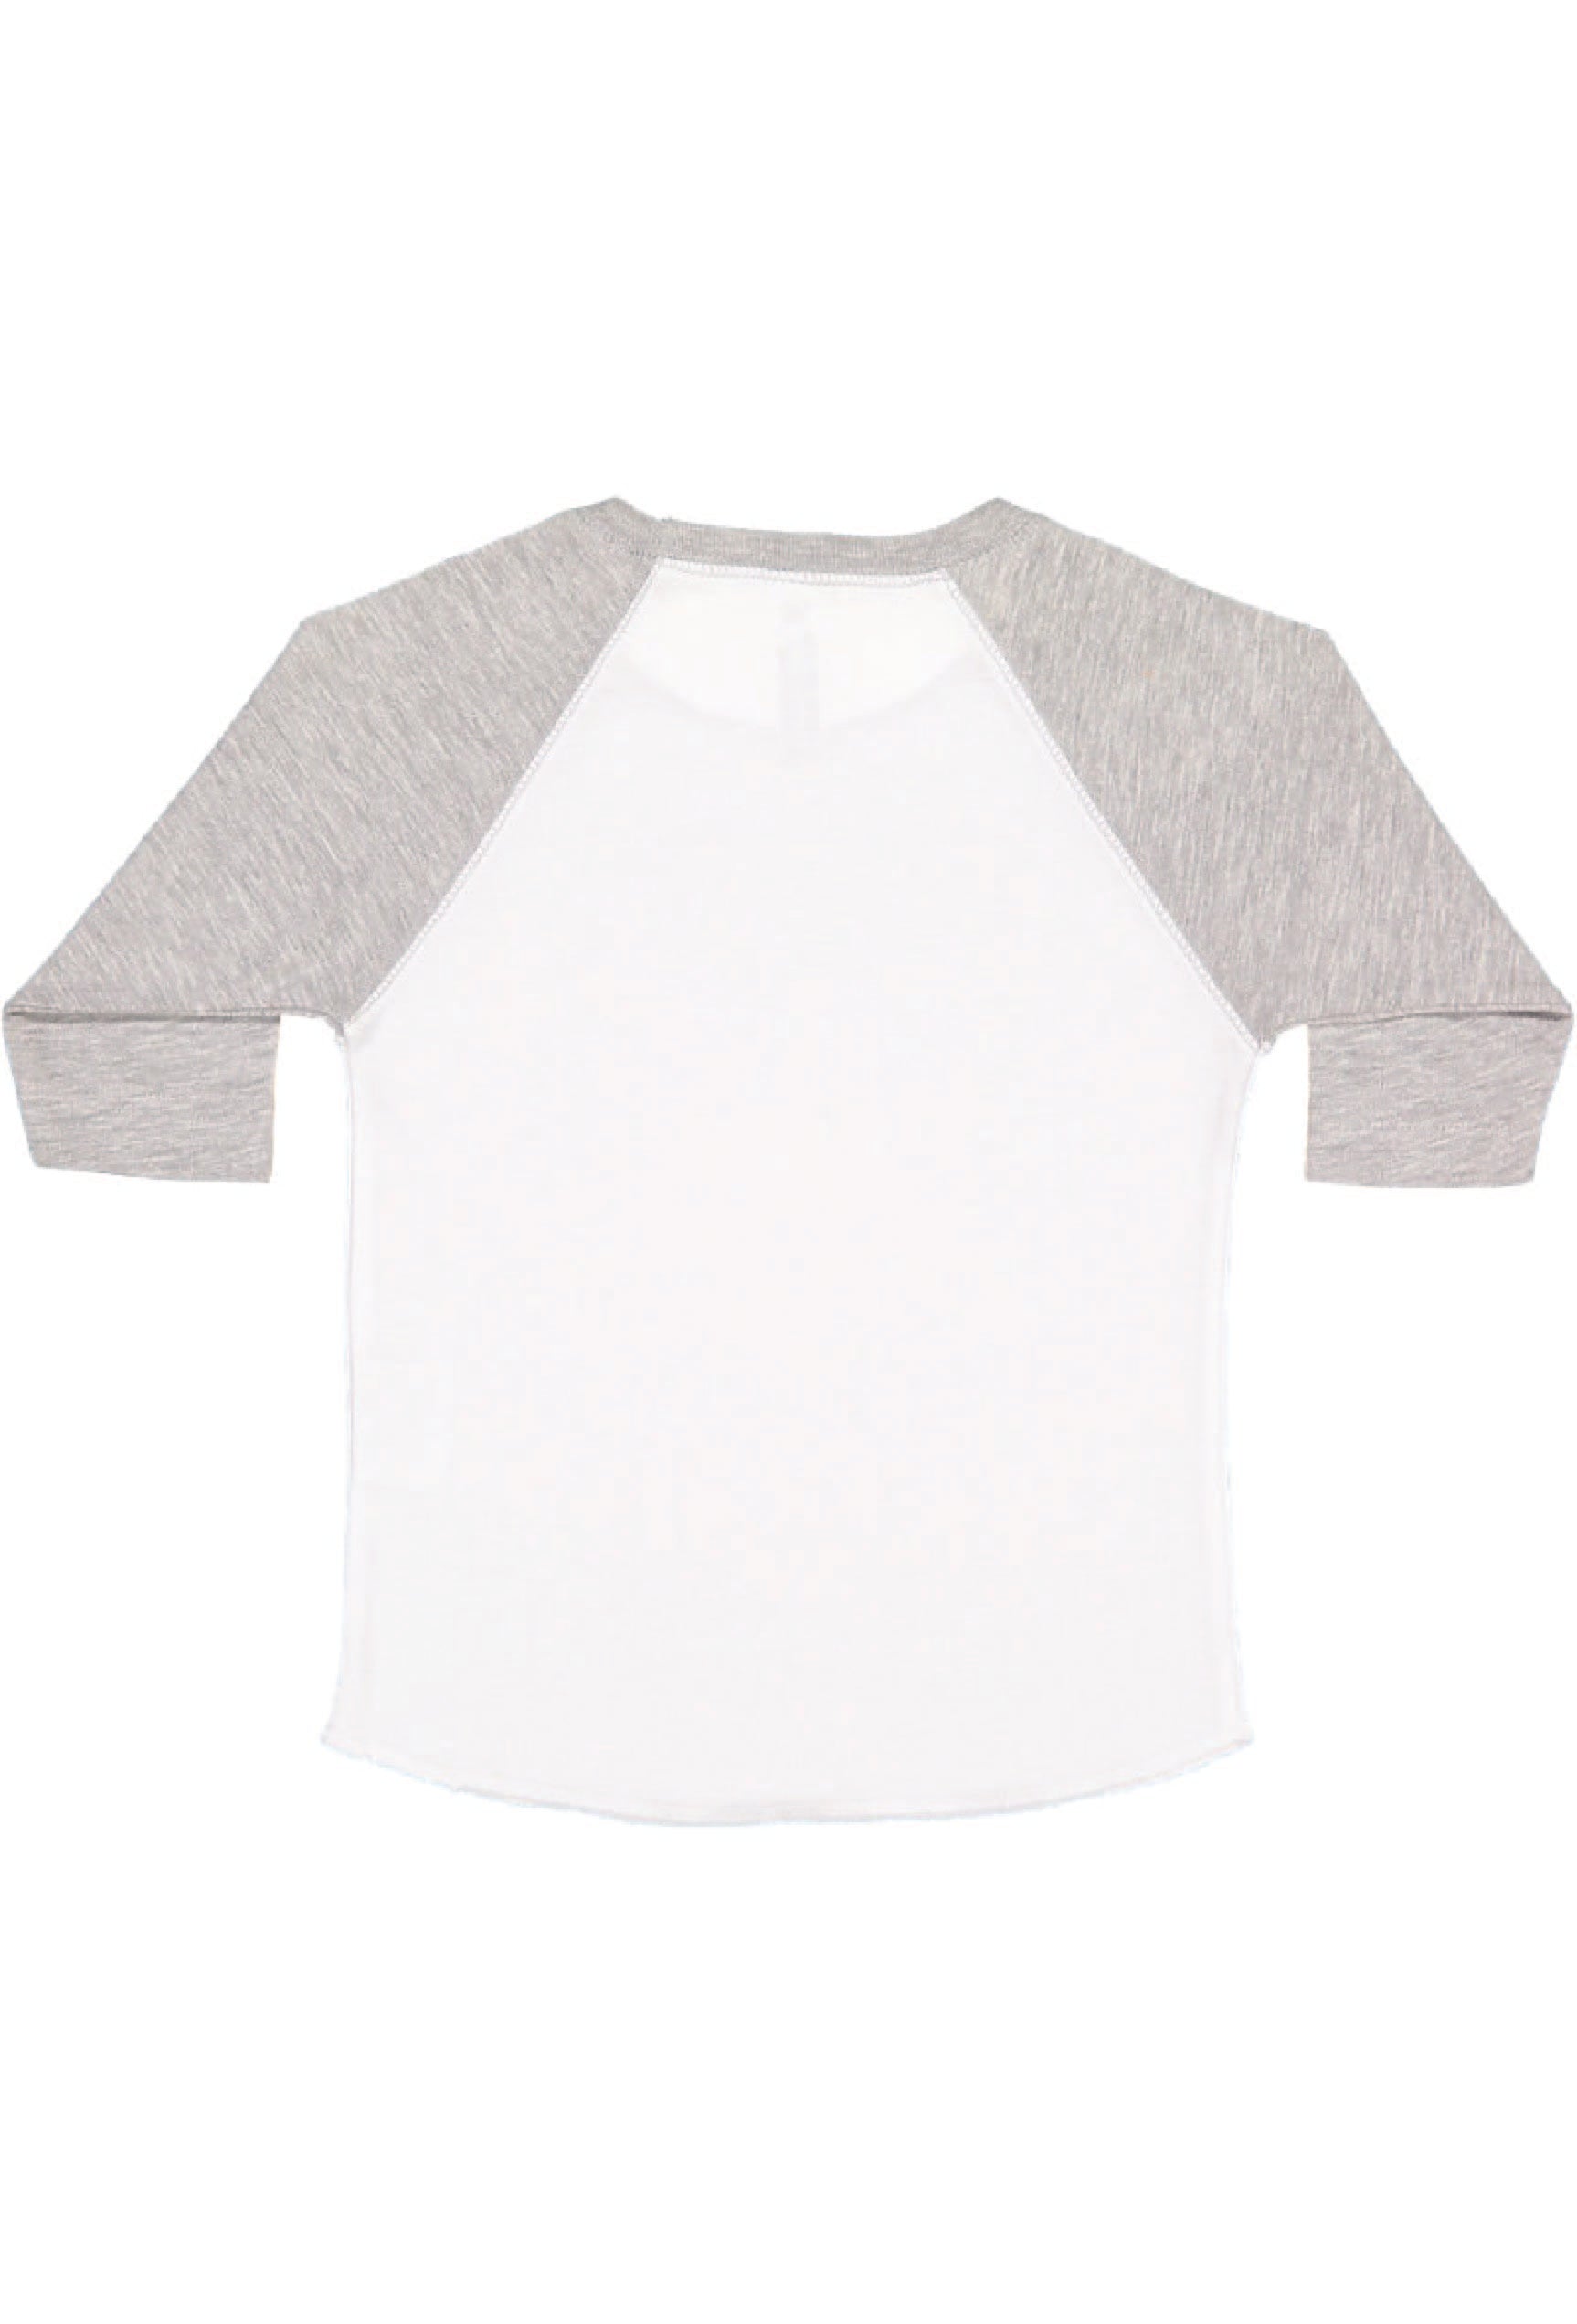 Toddler (Unisex) Raglan Baseball T-Shirt  (White / Vintage Heather)